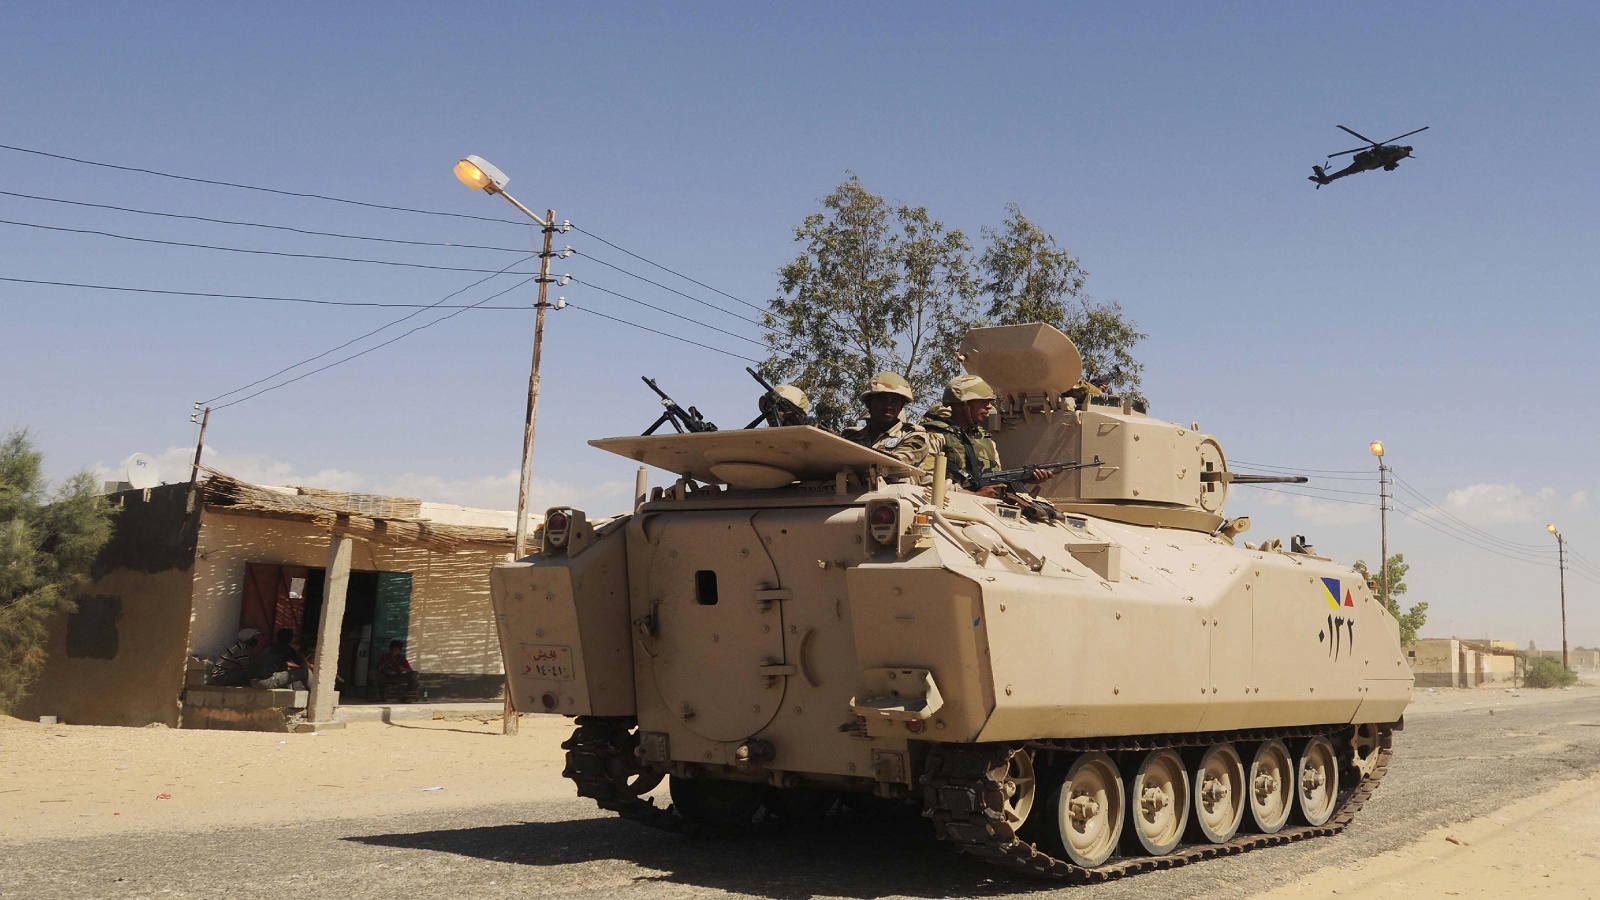 تنظيم "ولاية سيناء" يحول سيناء الى منطقة حرب